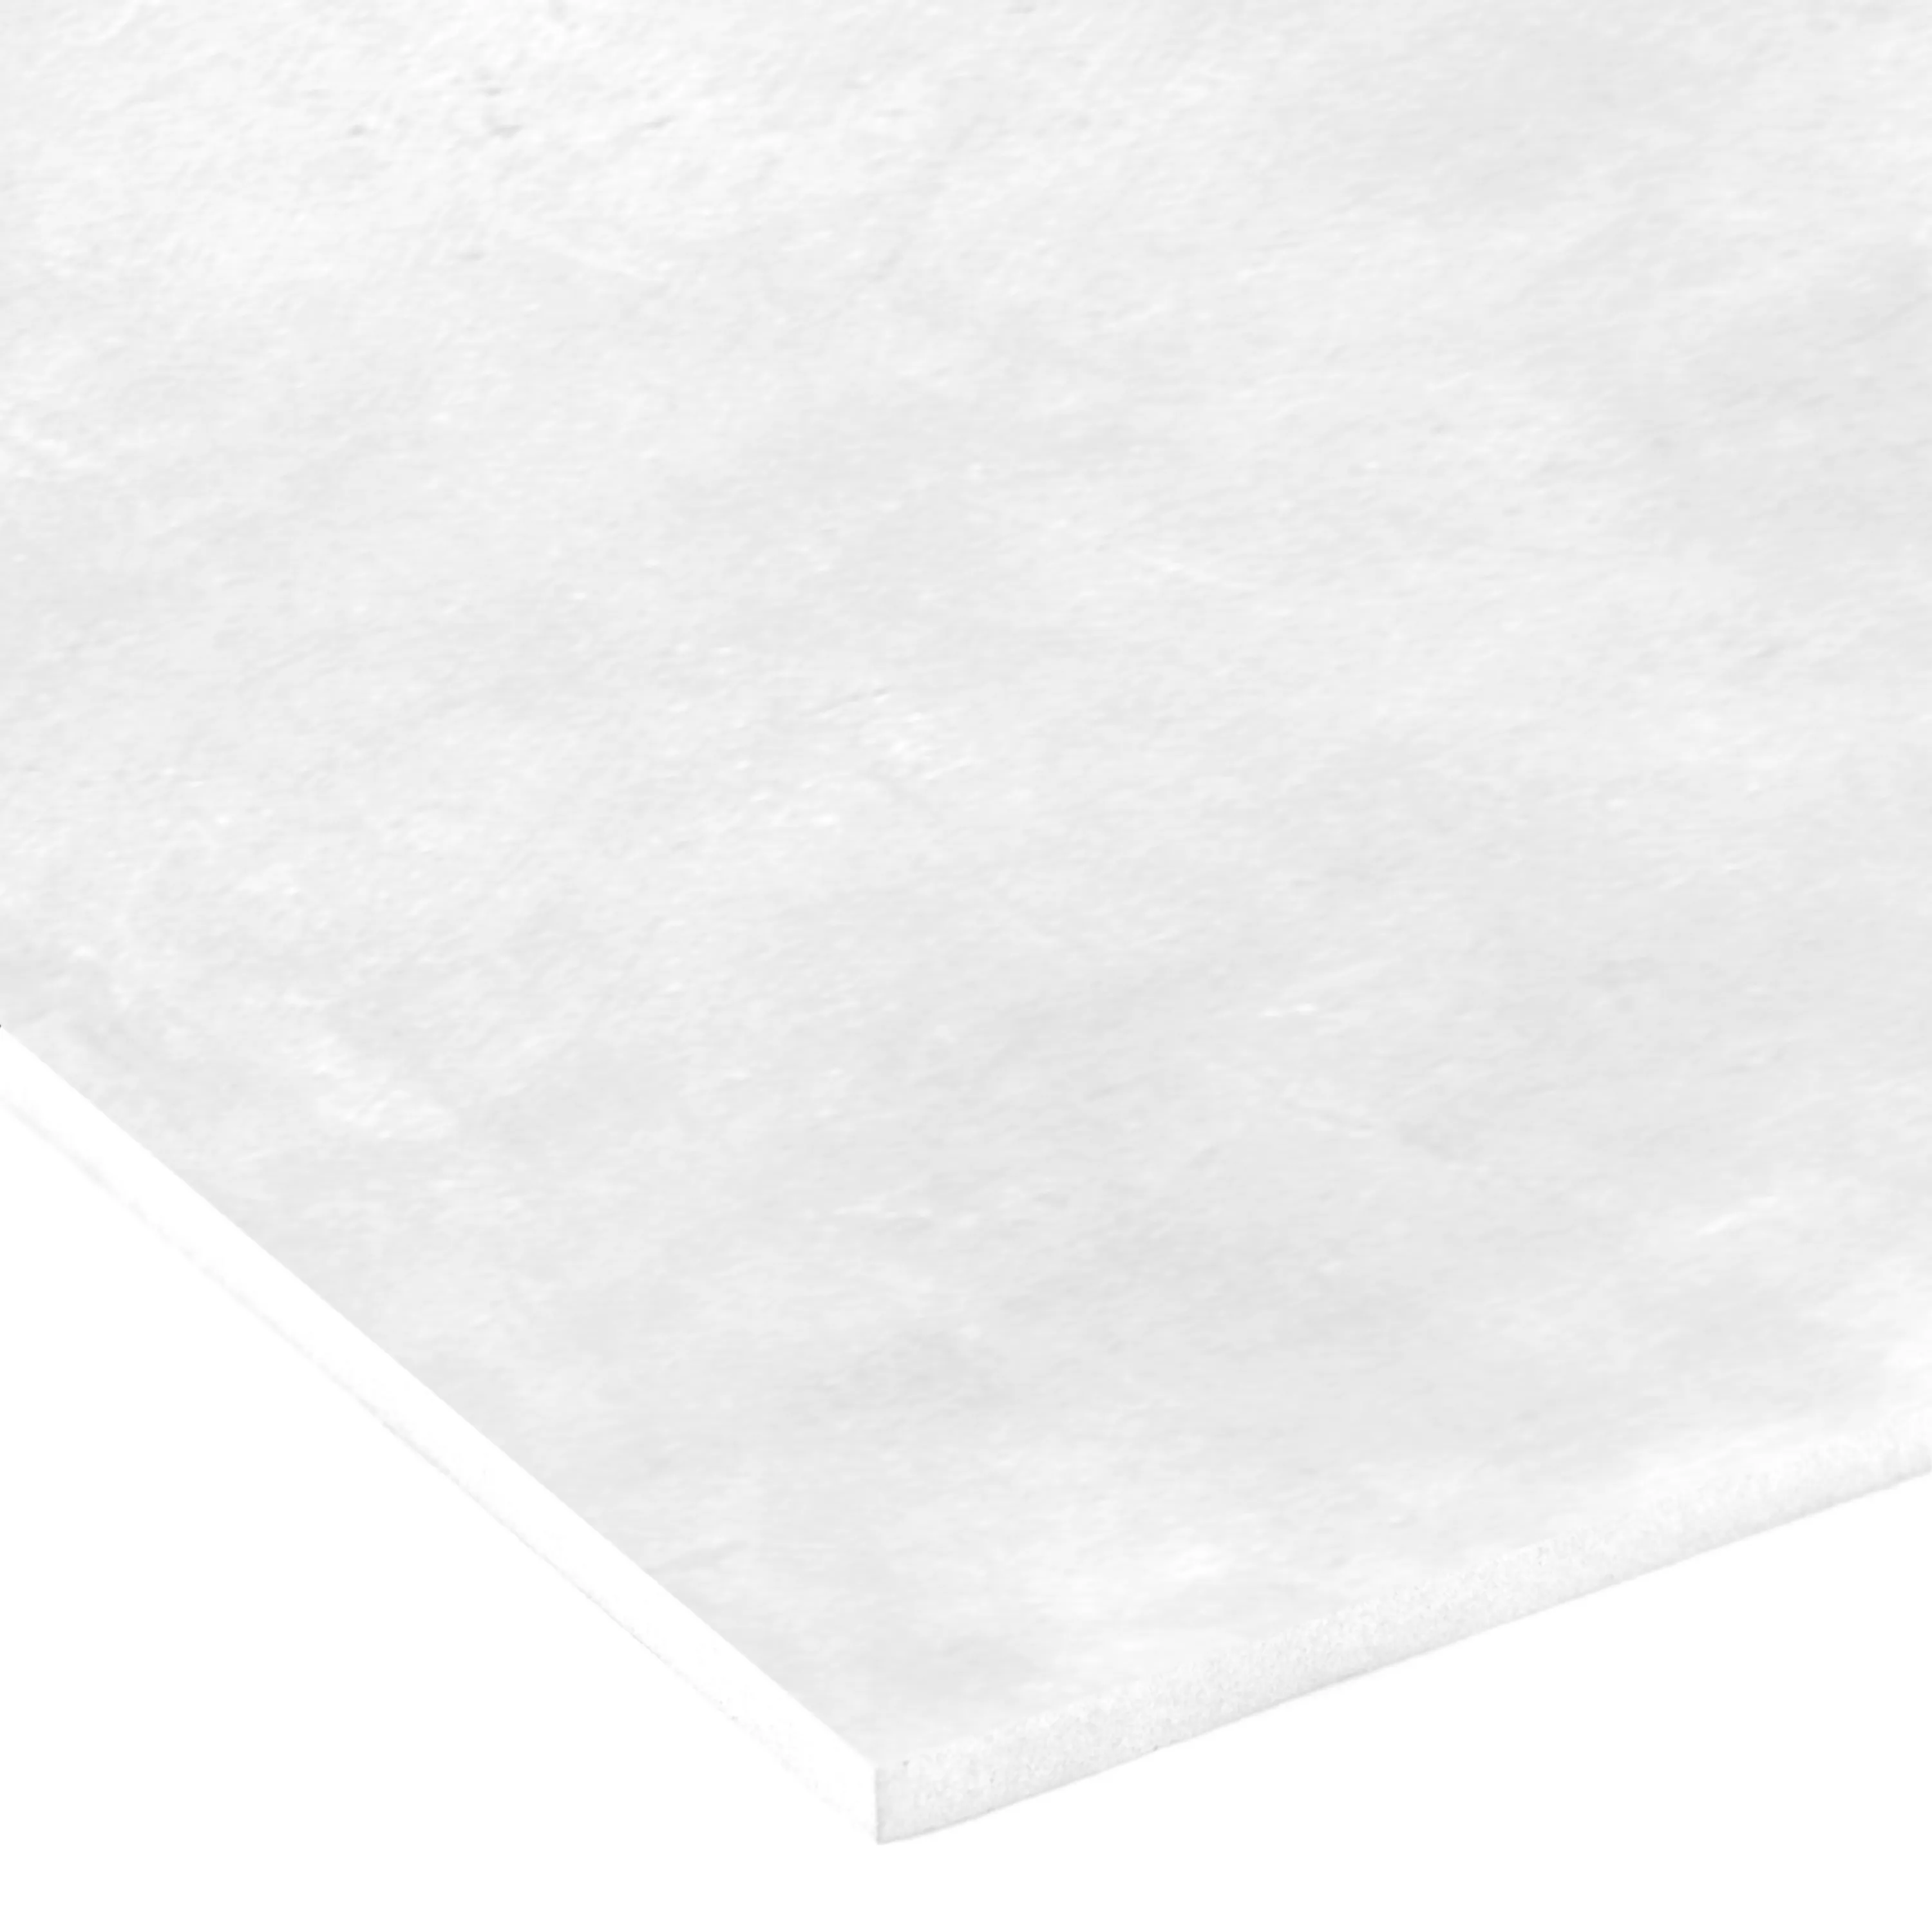 Vinilo Adhesivo Blanco Brillo de 30x120 cm Para Muebles Cocina